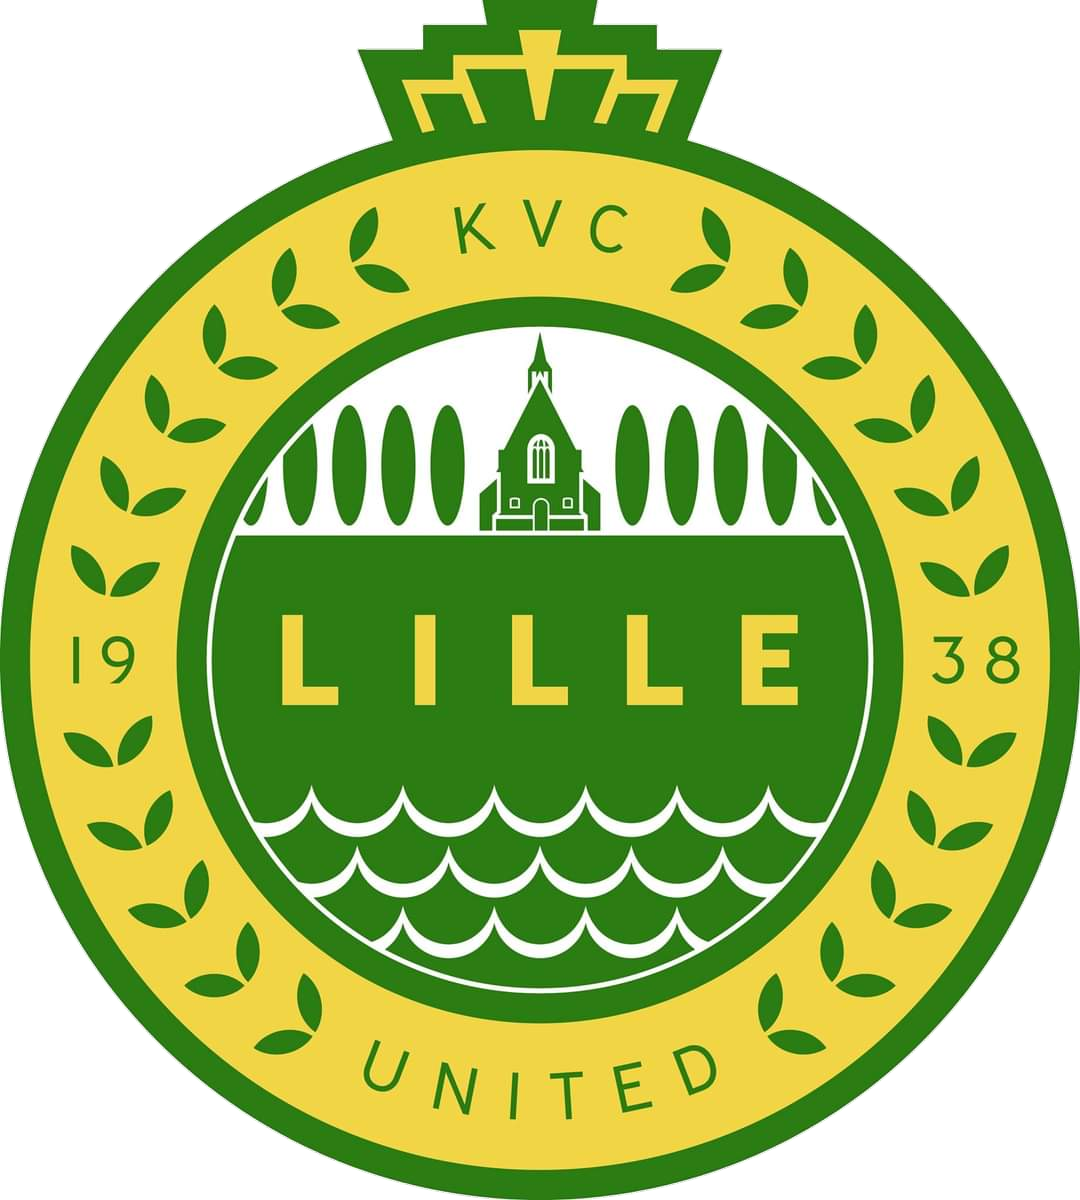 Wappen KVC Lille United diverse  92598